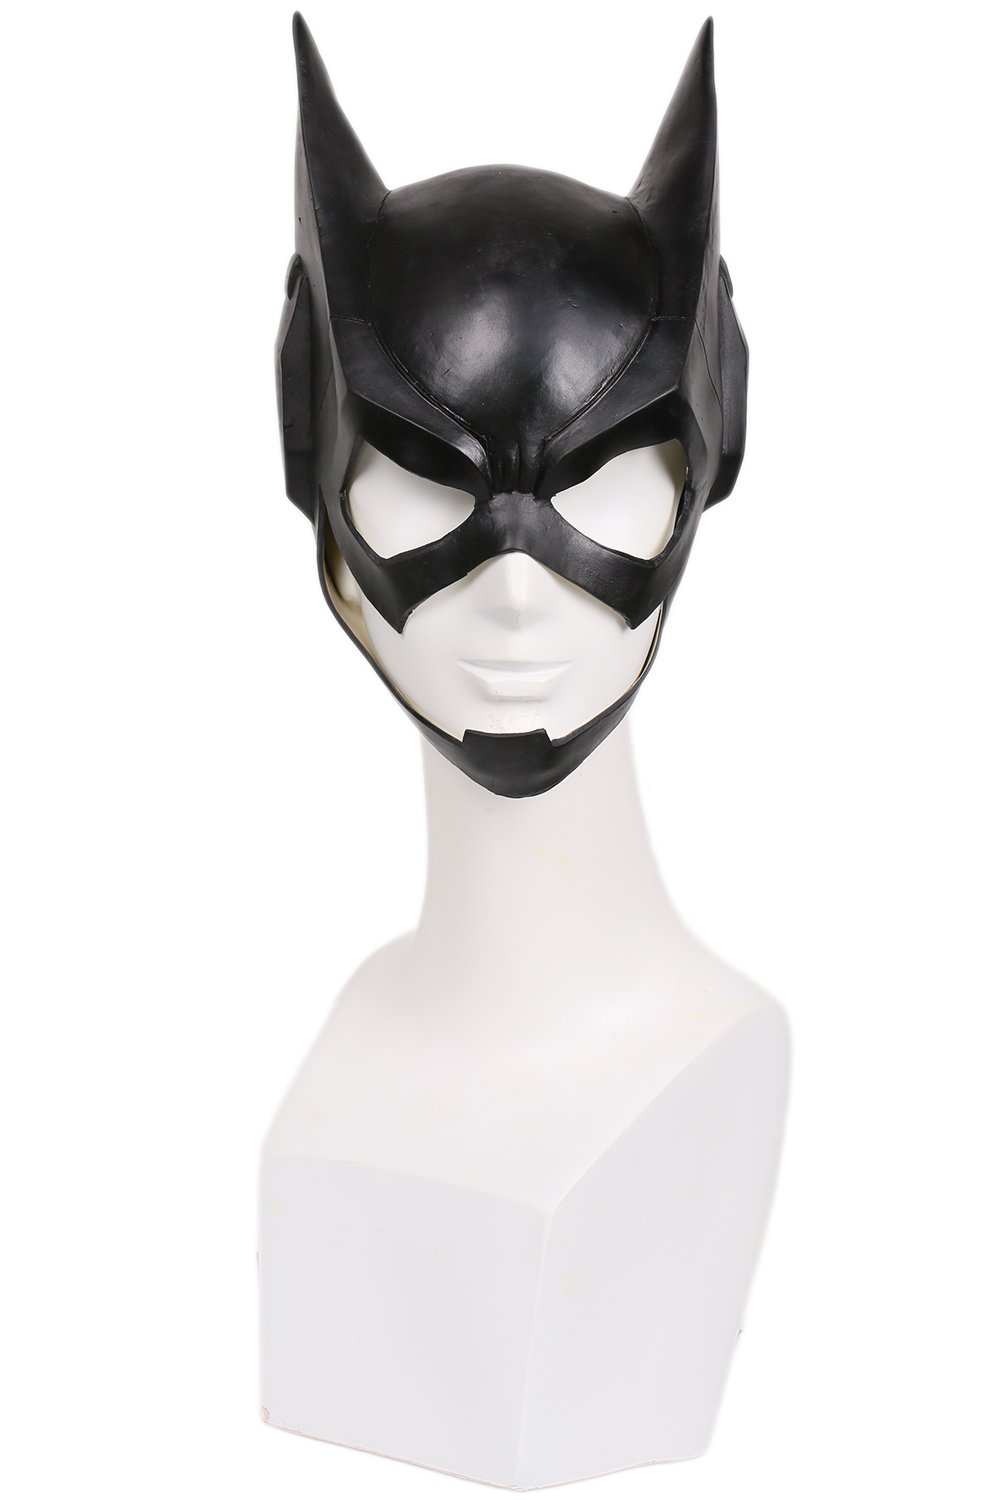 Xcoser Halloween Maske Cosplay Kostüm Latex Helm Schwarz voll Kopf Maske für Damen Verrückte Kleid Merchandise Replik Zubehör